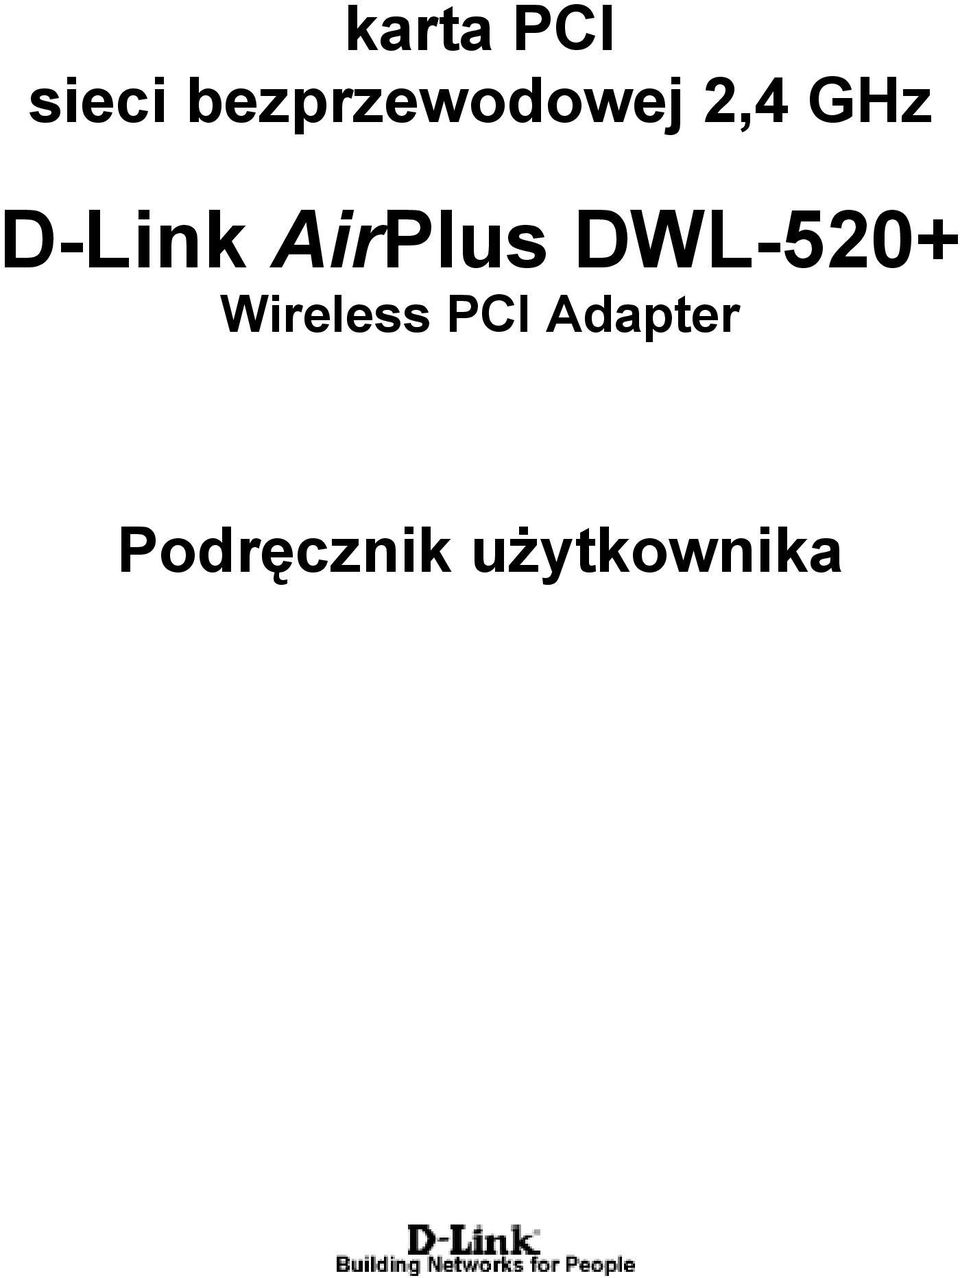 D-Link AirPlus DWL-520+